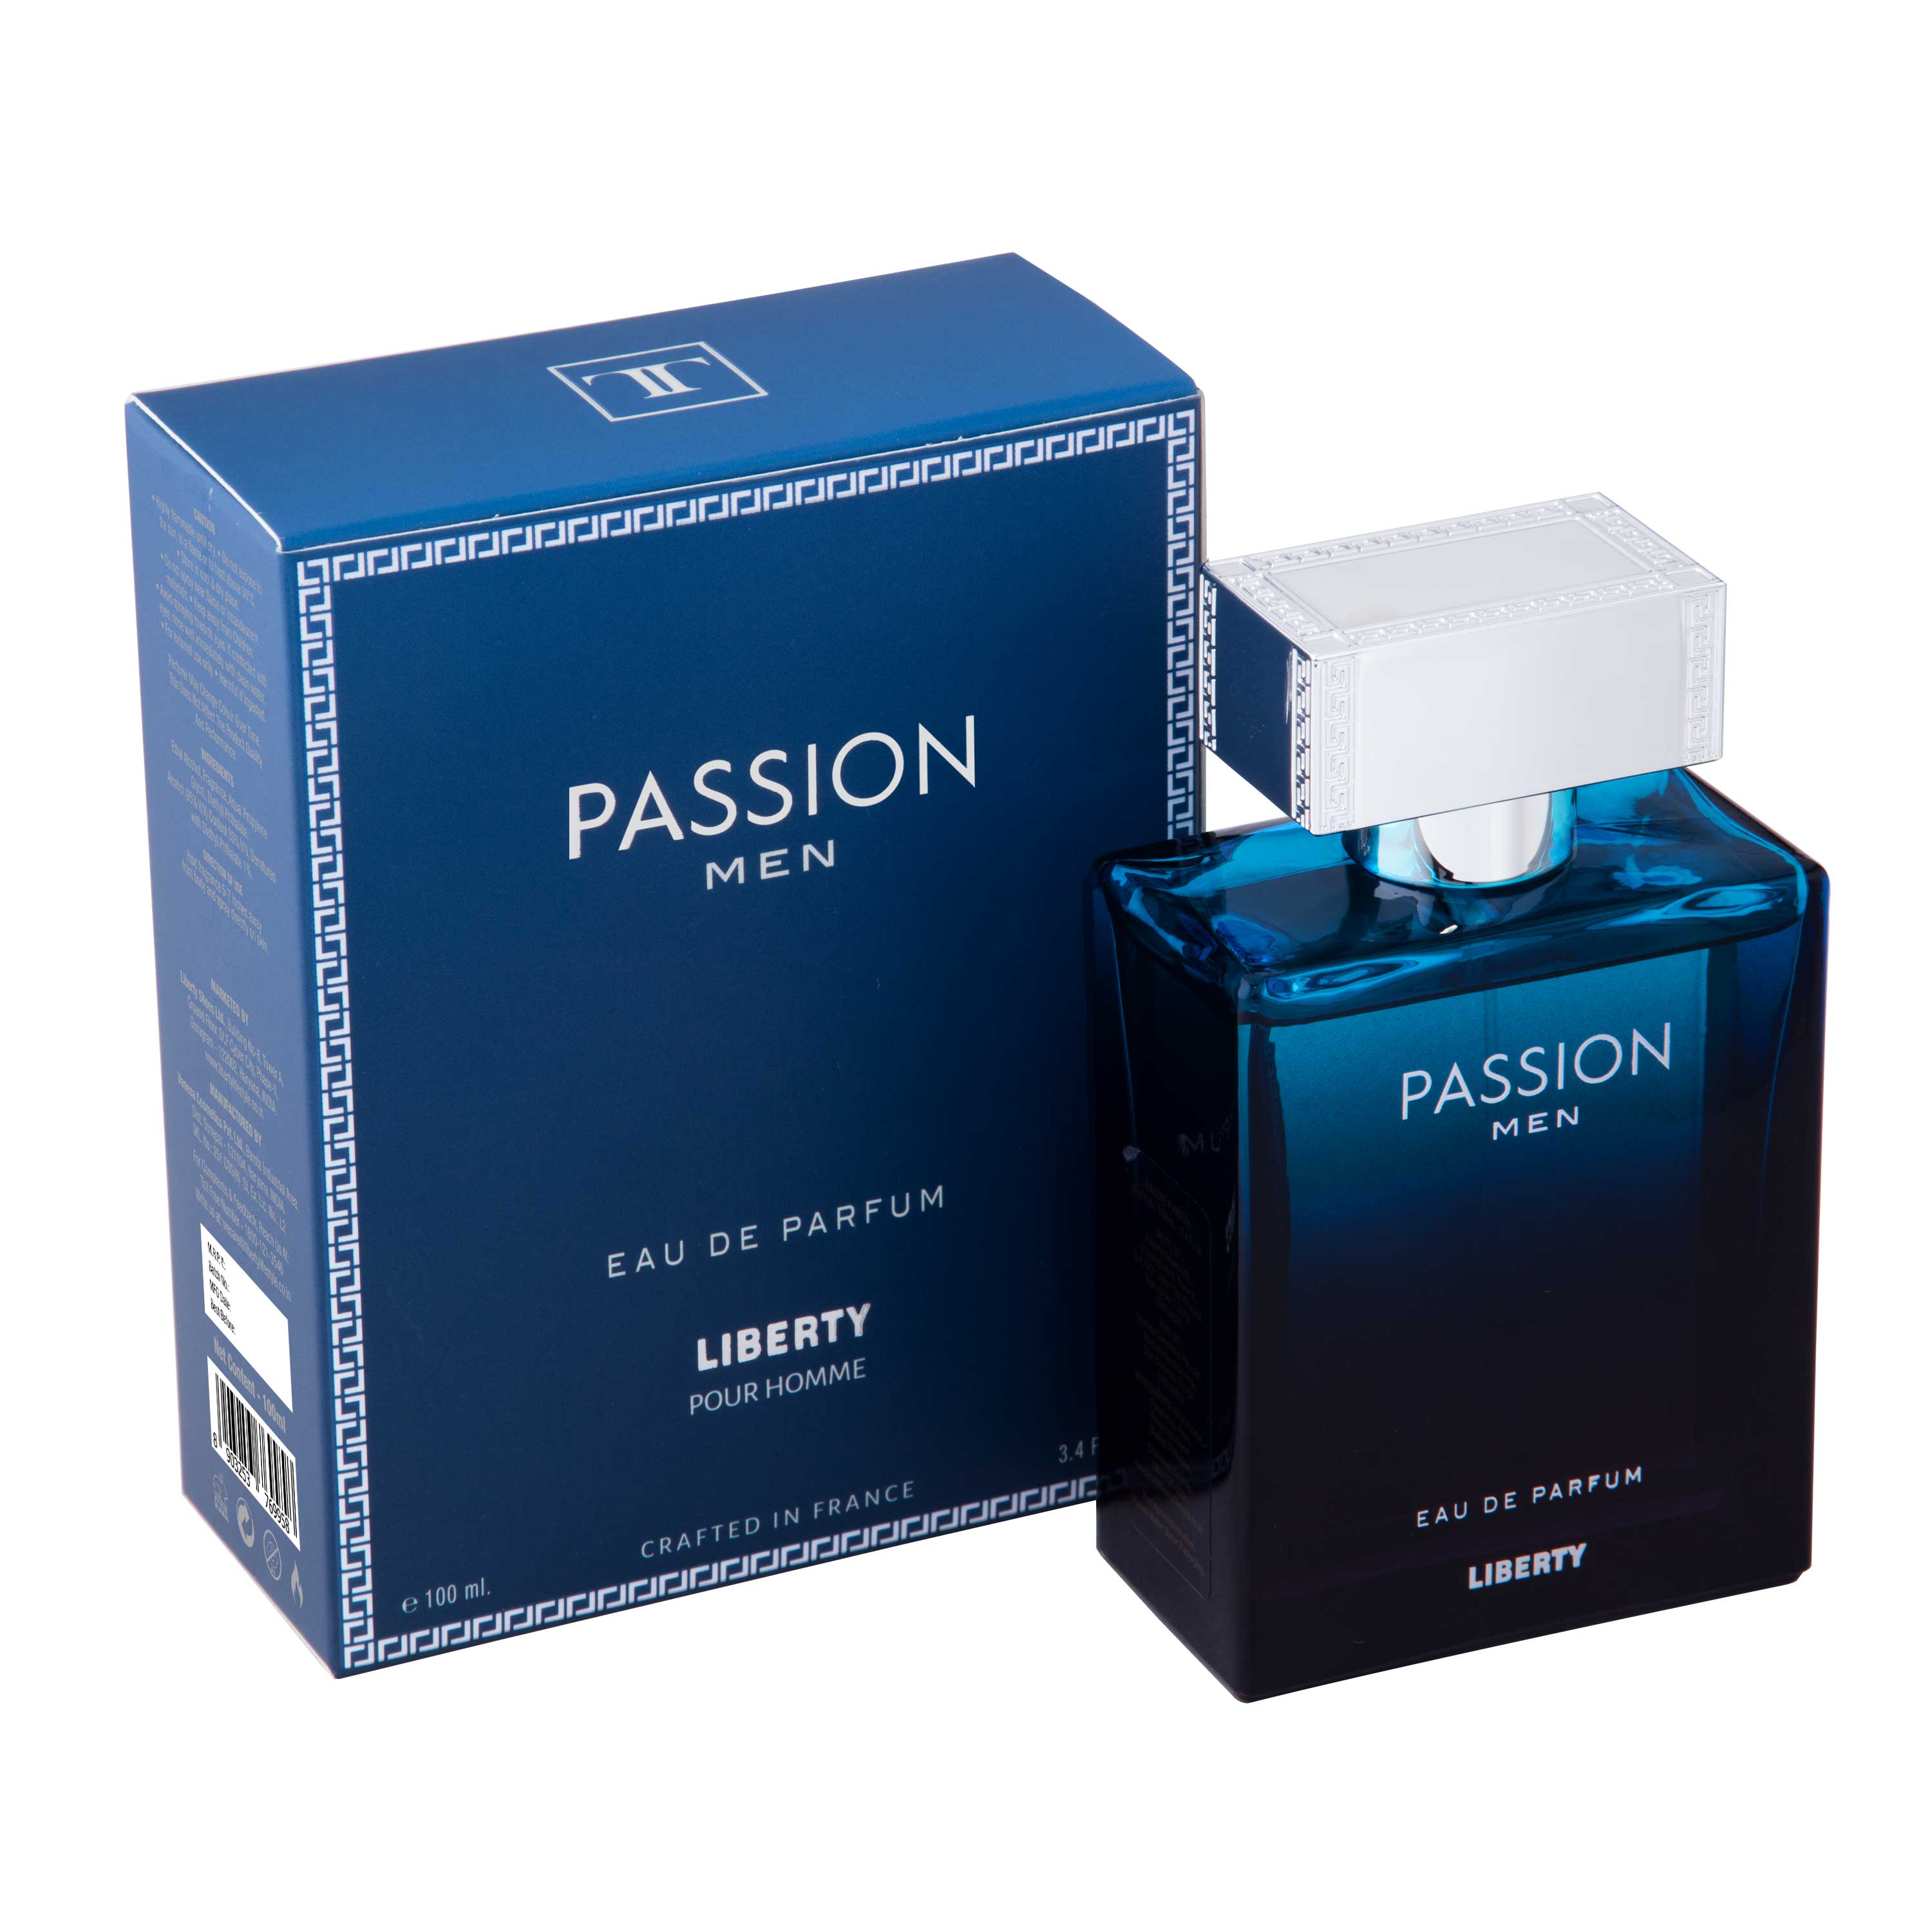 PASSION MEN - Eau De Perfume from LIBERTY LIFESTYLE